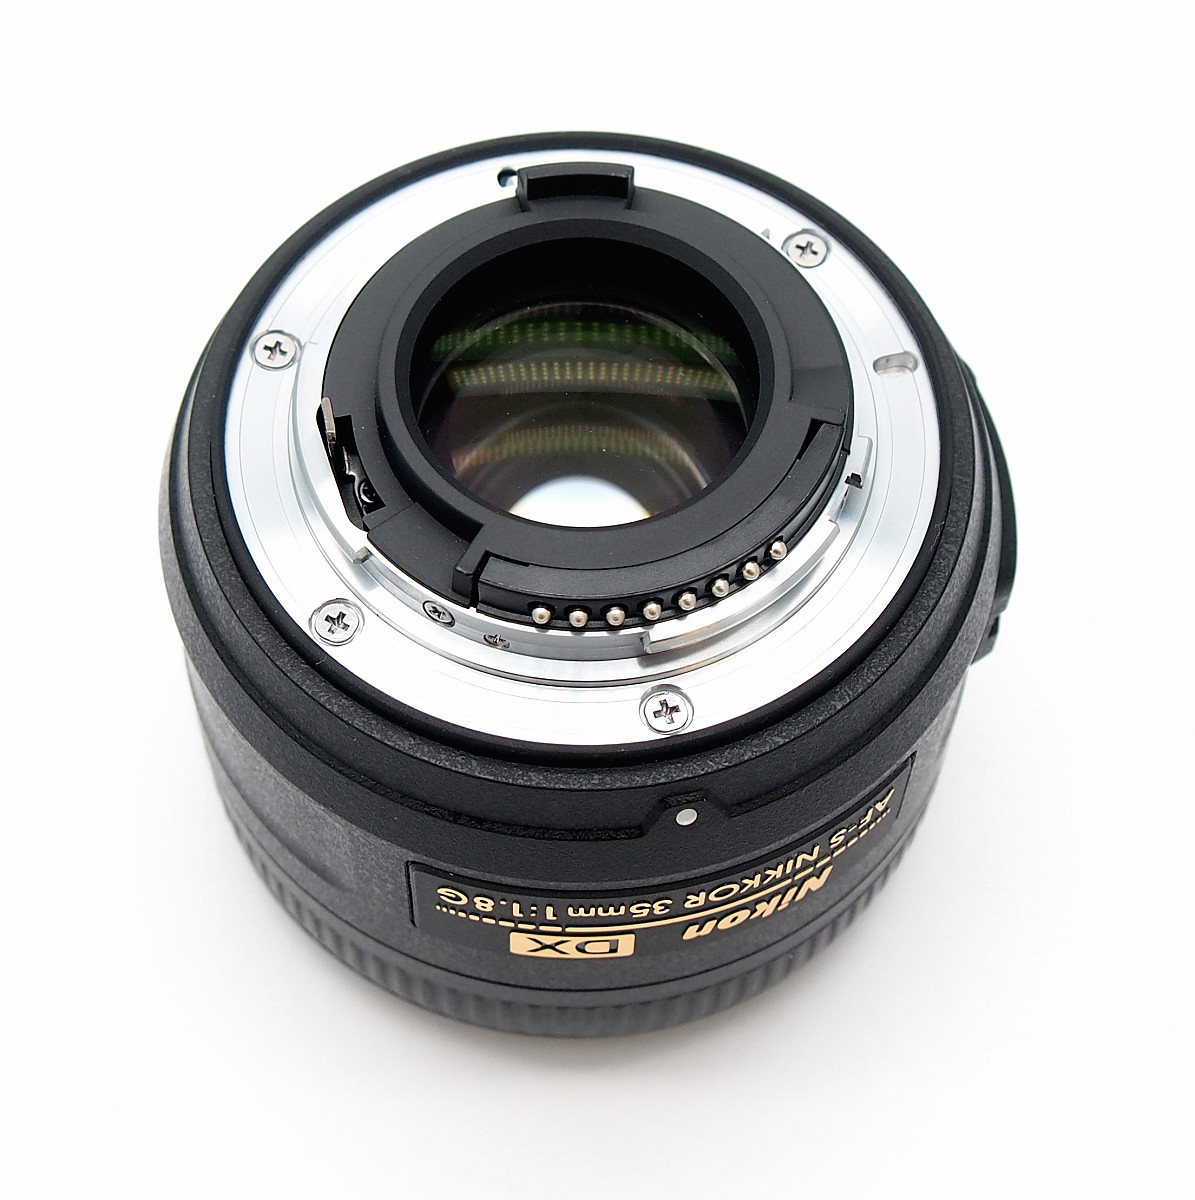 Nikon 35mm F1.8G AF-S DX Autofocus Lens, Mint & Boxed #8653